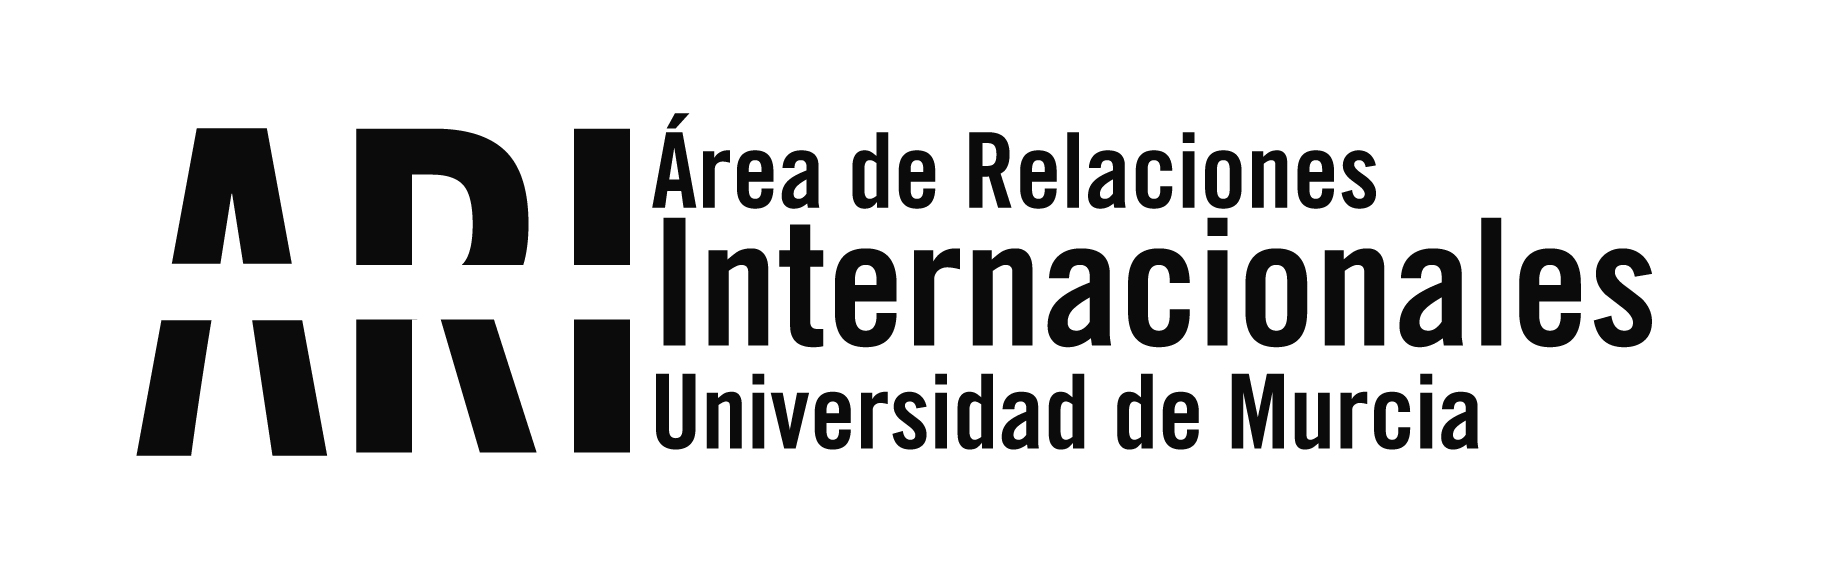 20180206 Ruta de los Museos de Murcia - Eventos - Área de Relaciones Internacionales